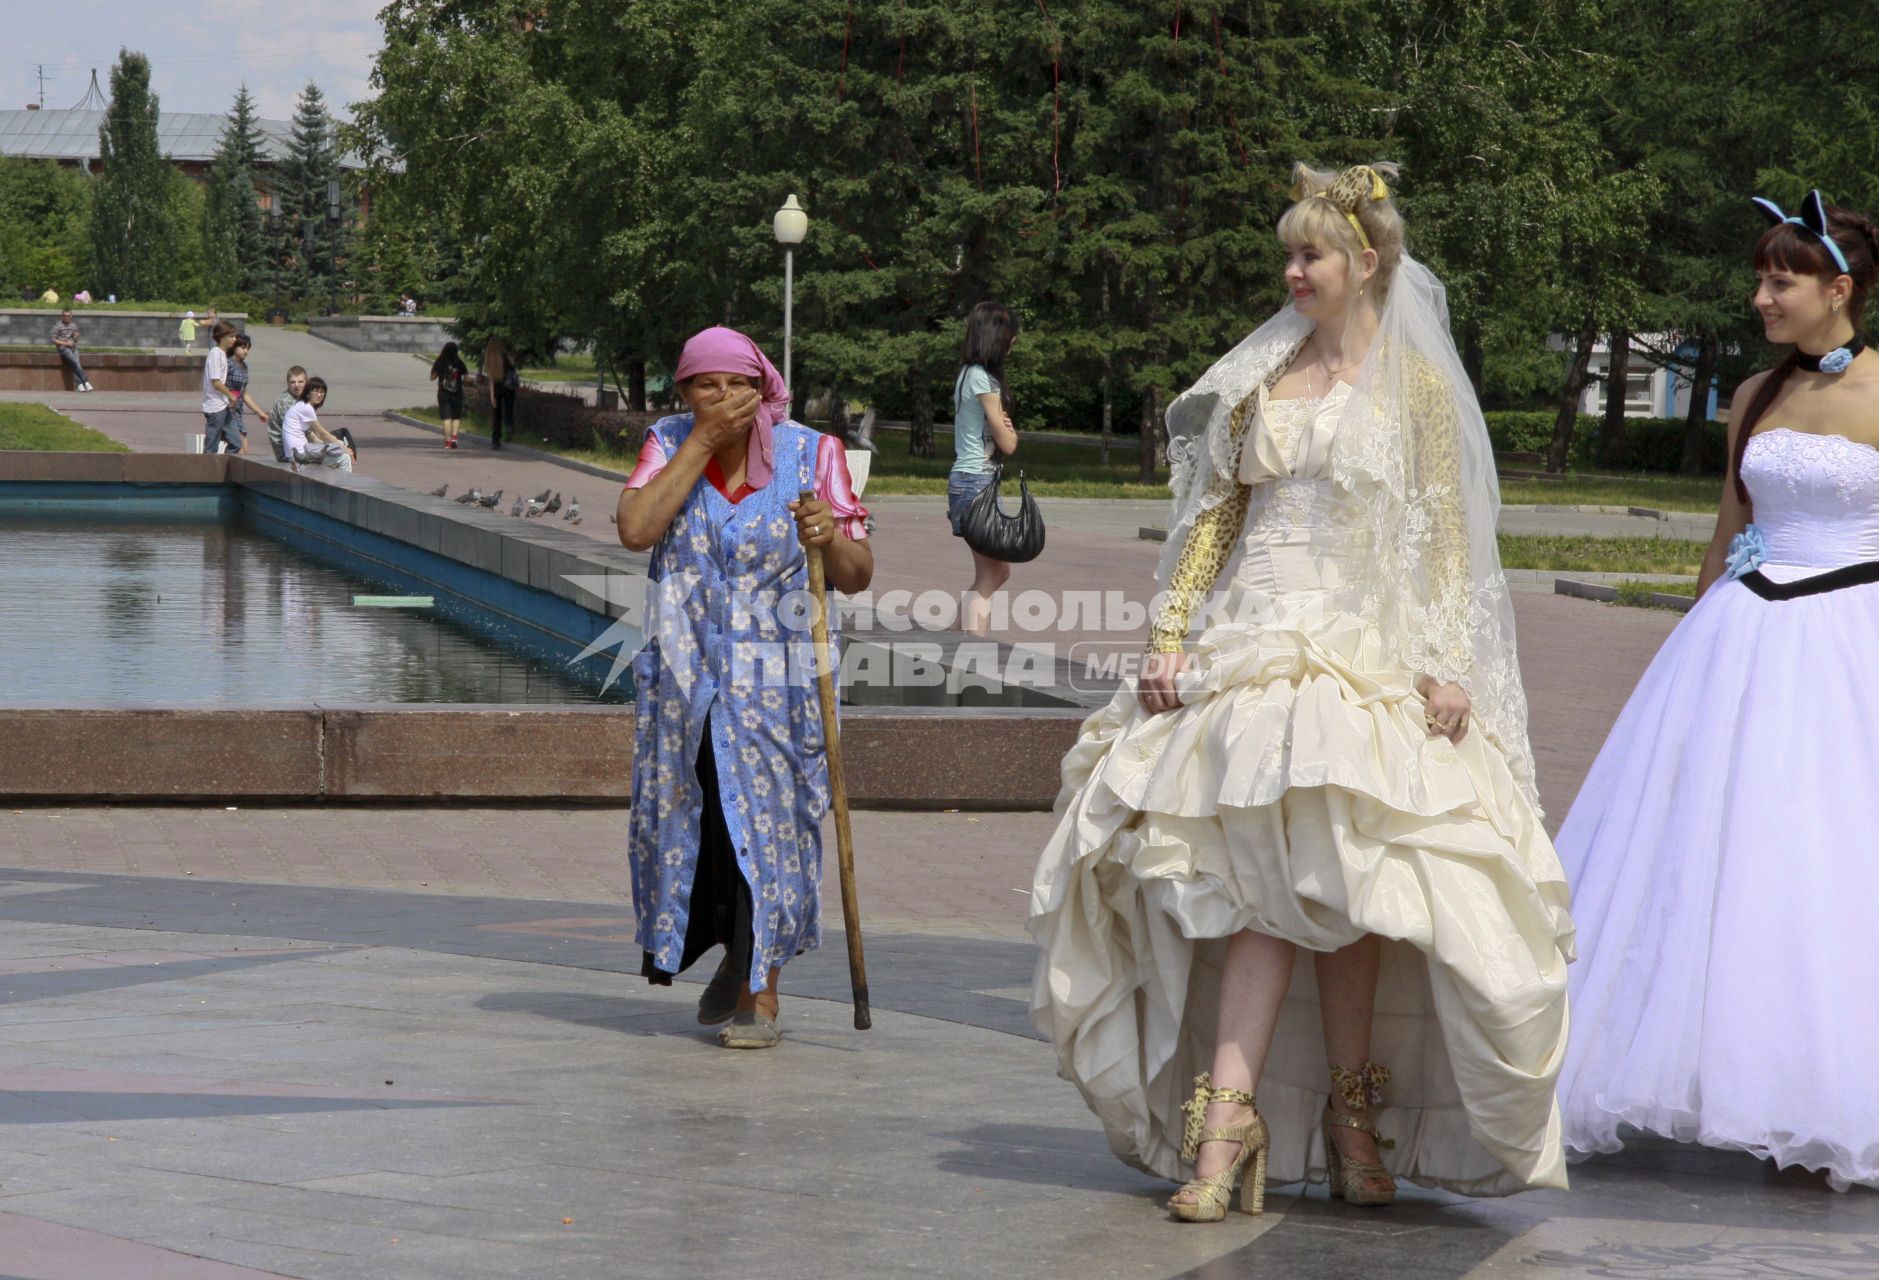 По городу идет девушка в свадебном платье, мимо идет удивленная старушка.